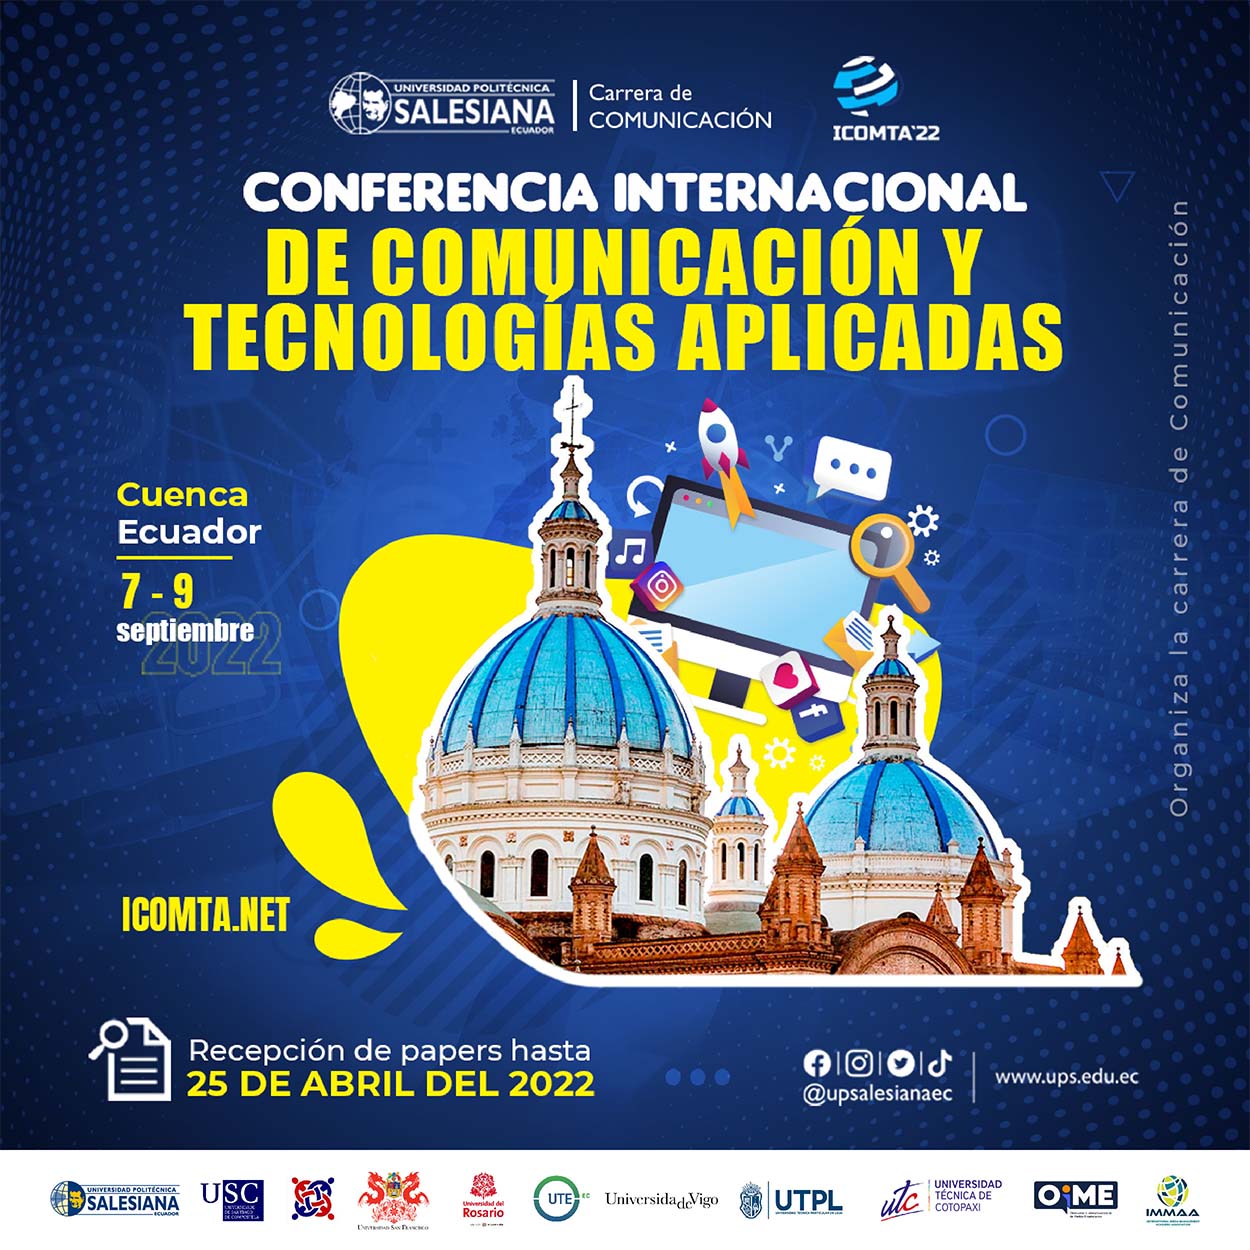 Afiche promocional de la Conferencia Internacional de Comunicación y Tecnologías Aplicadas 2022